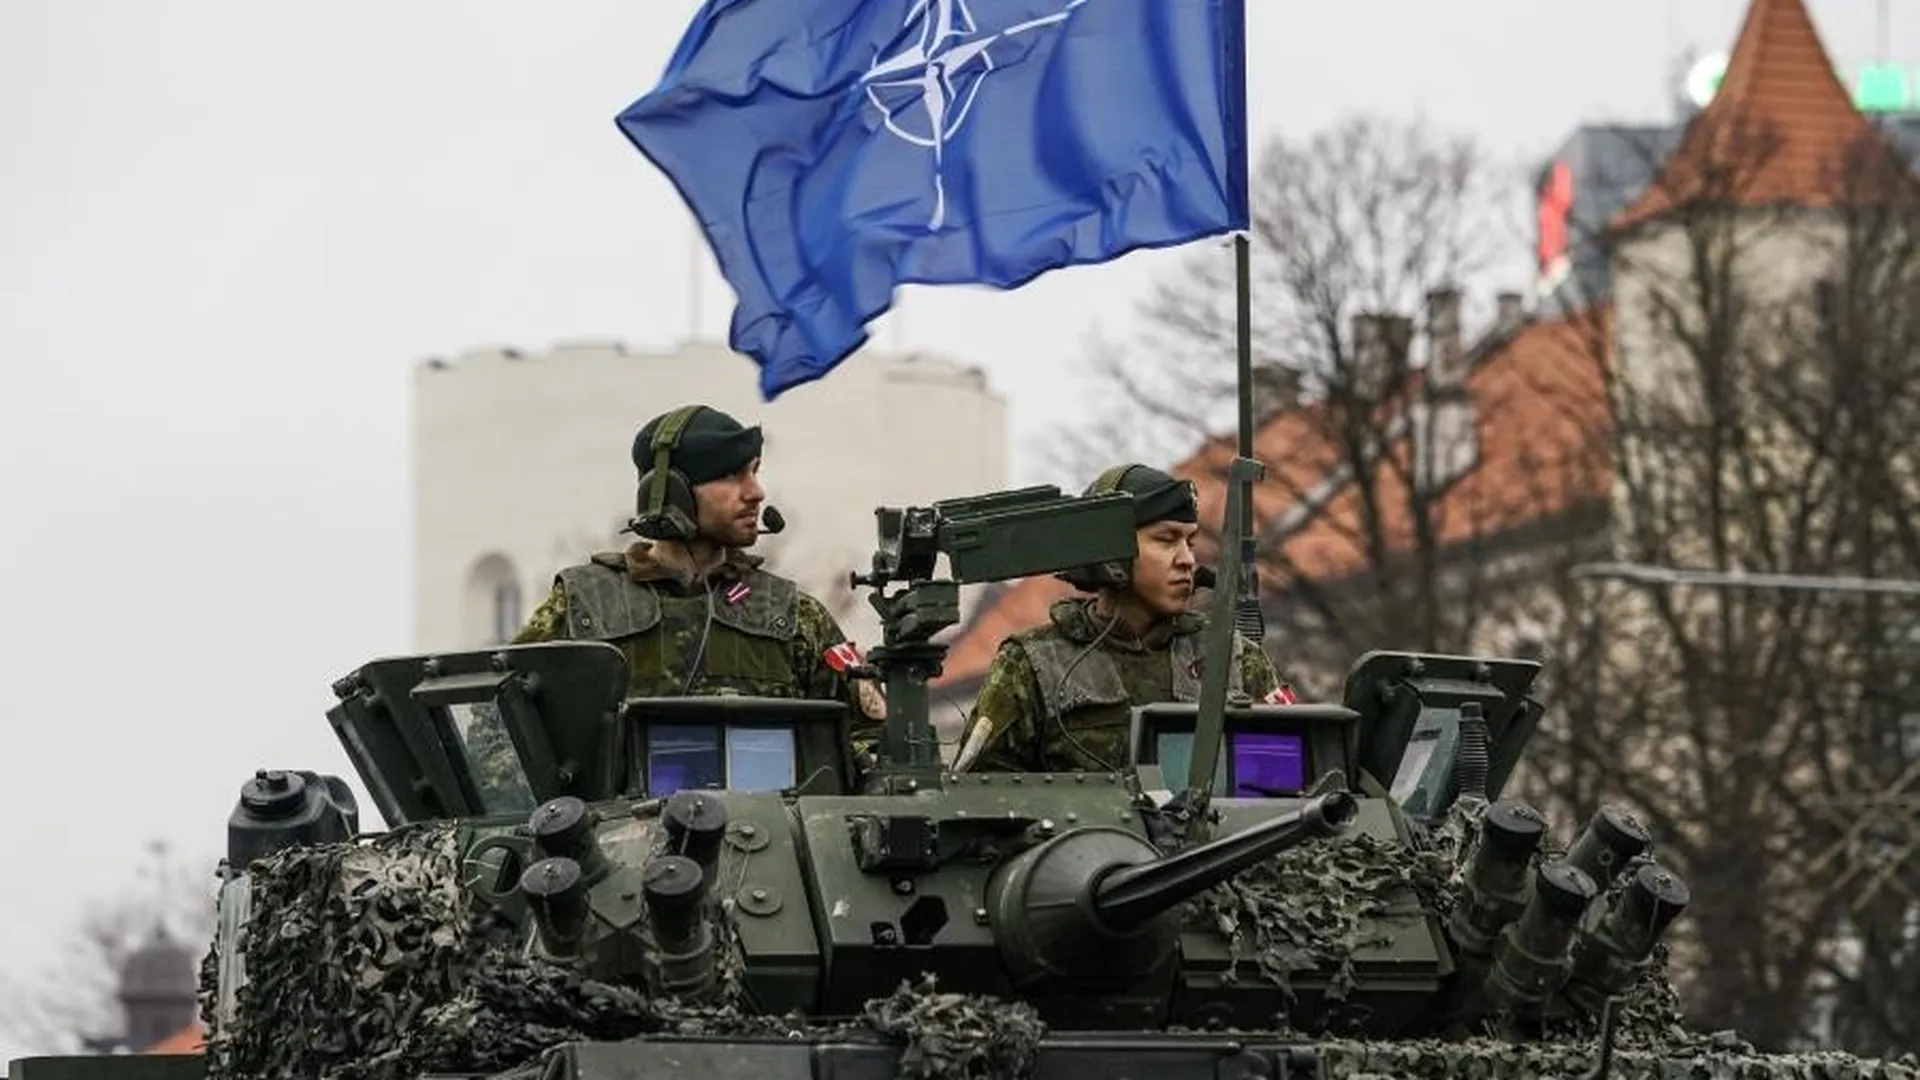 Песков: продвижение НАТО к границам РФ — повод для принятия мер по безопасности